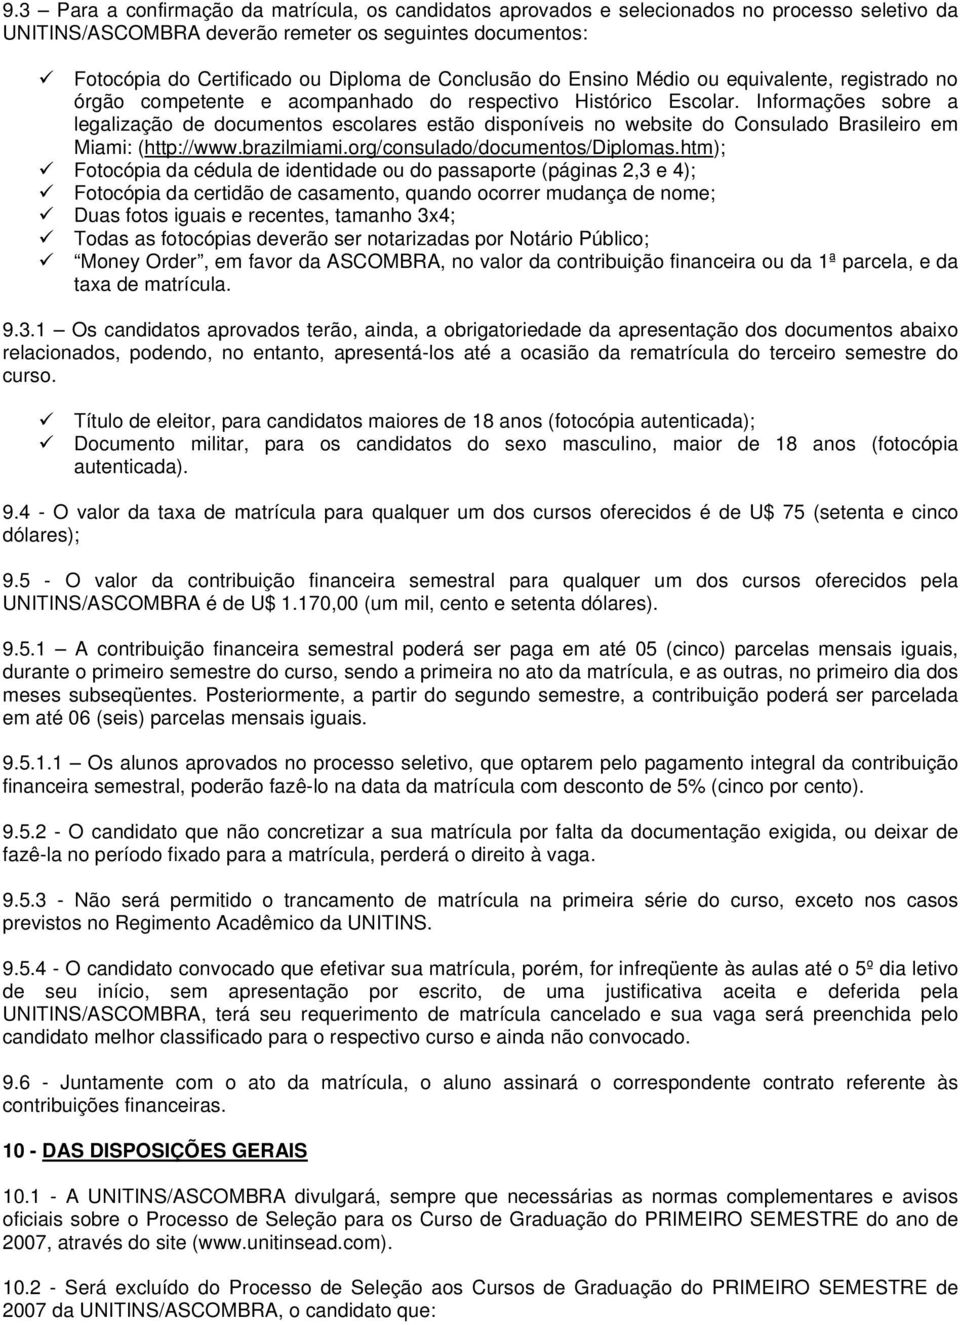 Informações sobre a legalização de documentos escolares estão disponíveis no website do Consulado Brasileiro em Miami: (http://www.brazilmiami.org/consulado/documentos/diplomas.